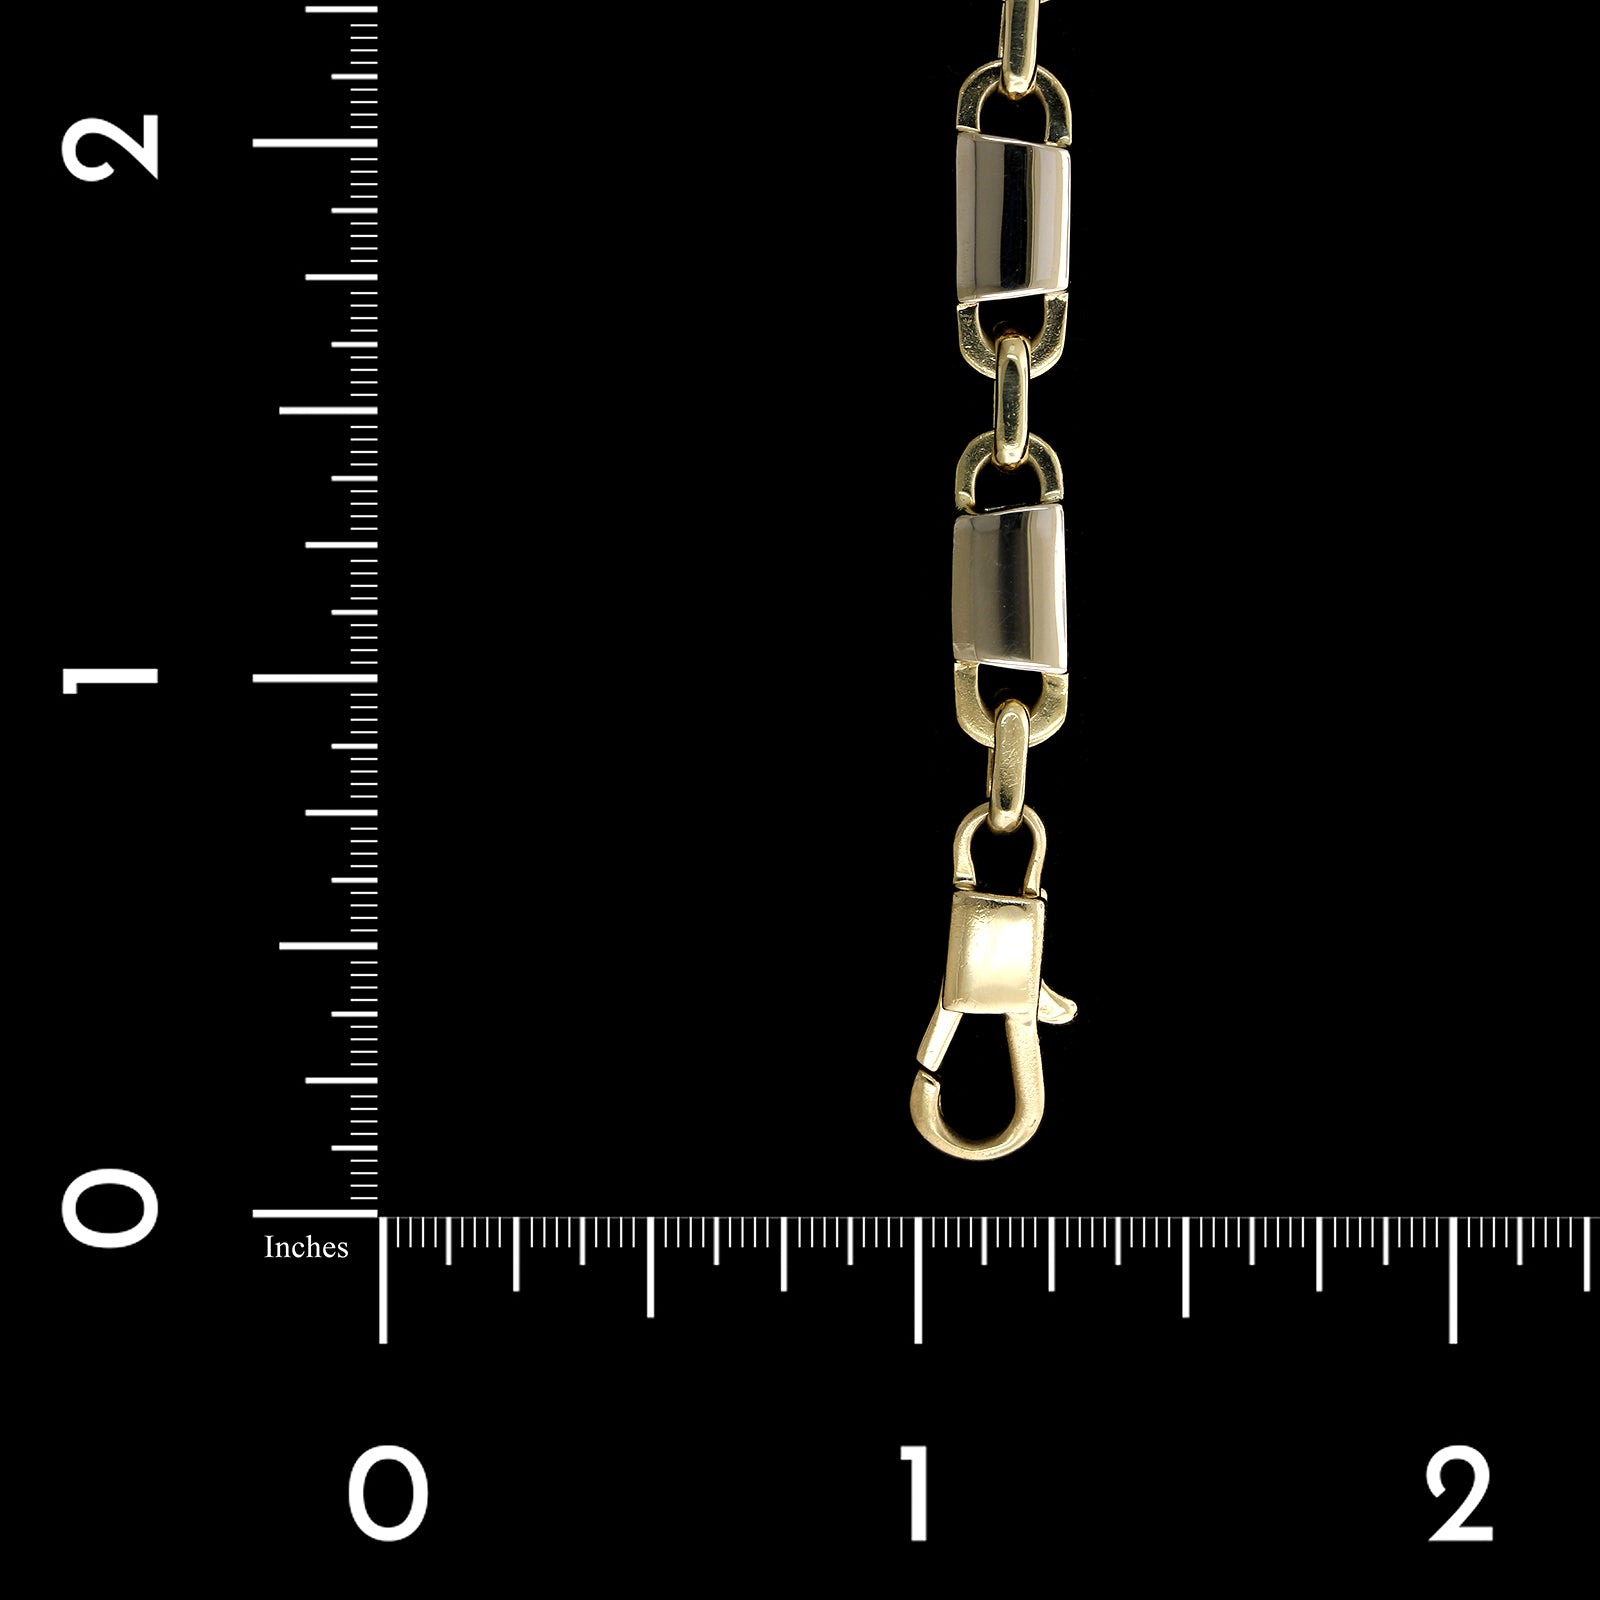 14K Two-tone Gold Estate Fancy Link Bracelet